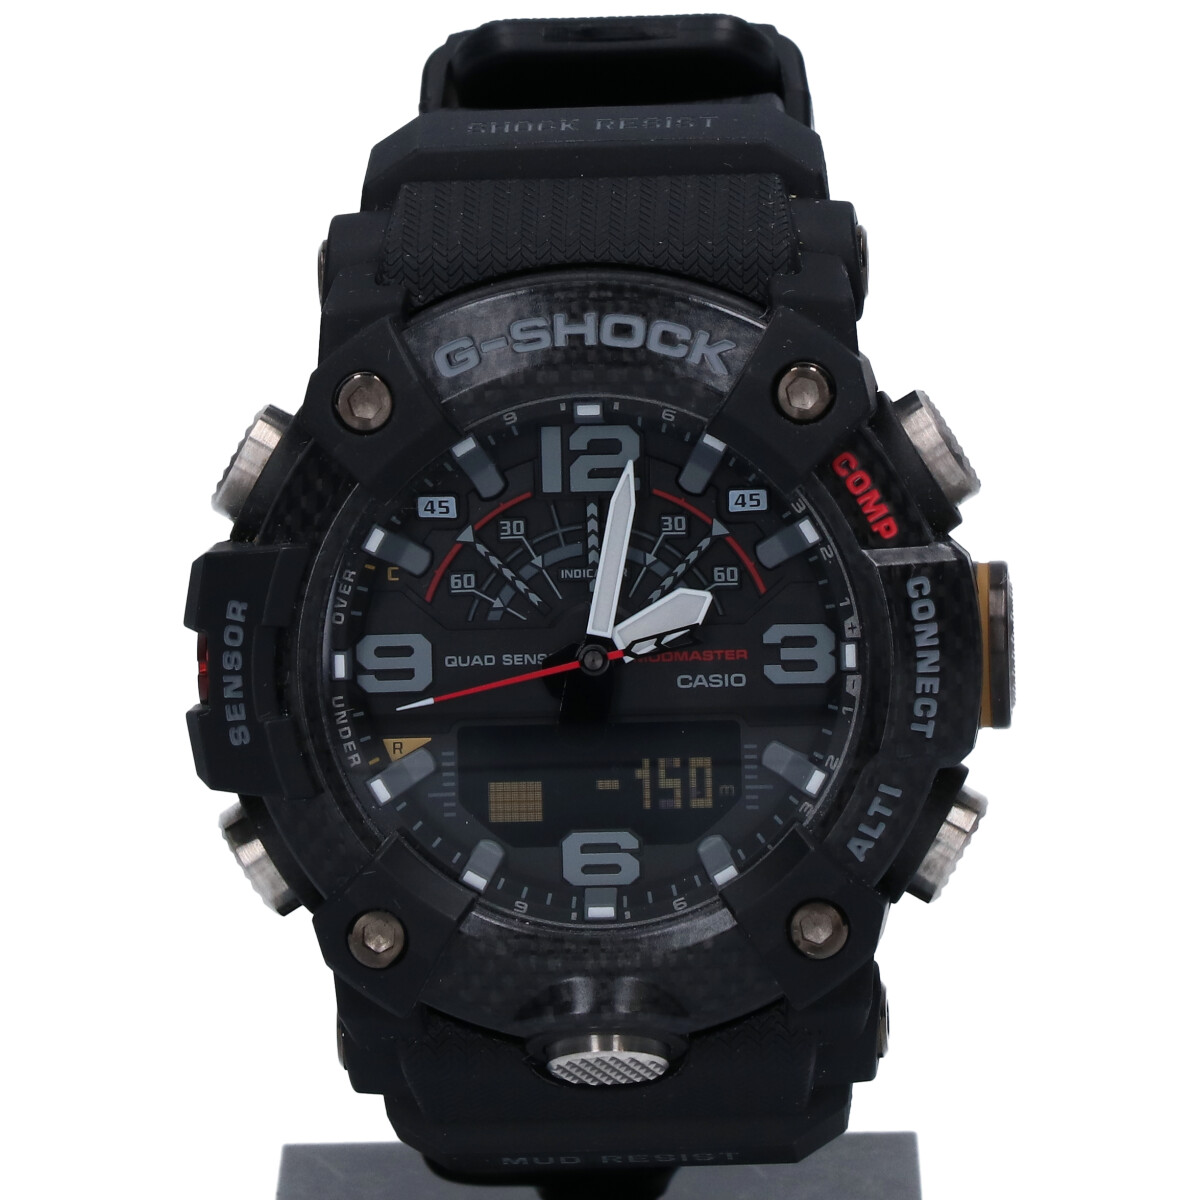 G-SHOCKのマスターオブGシリーズ GG-B100-1AJF MUDMASTER マッドマスター Bluetooth搭載 ワールドタイム アナデジ時計の買取実績です。